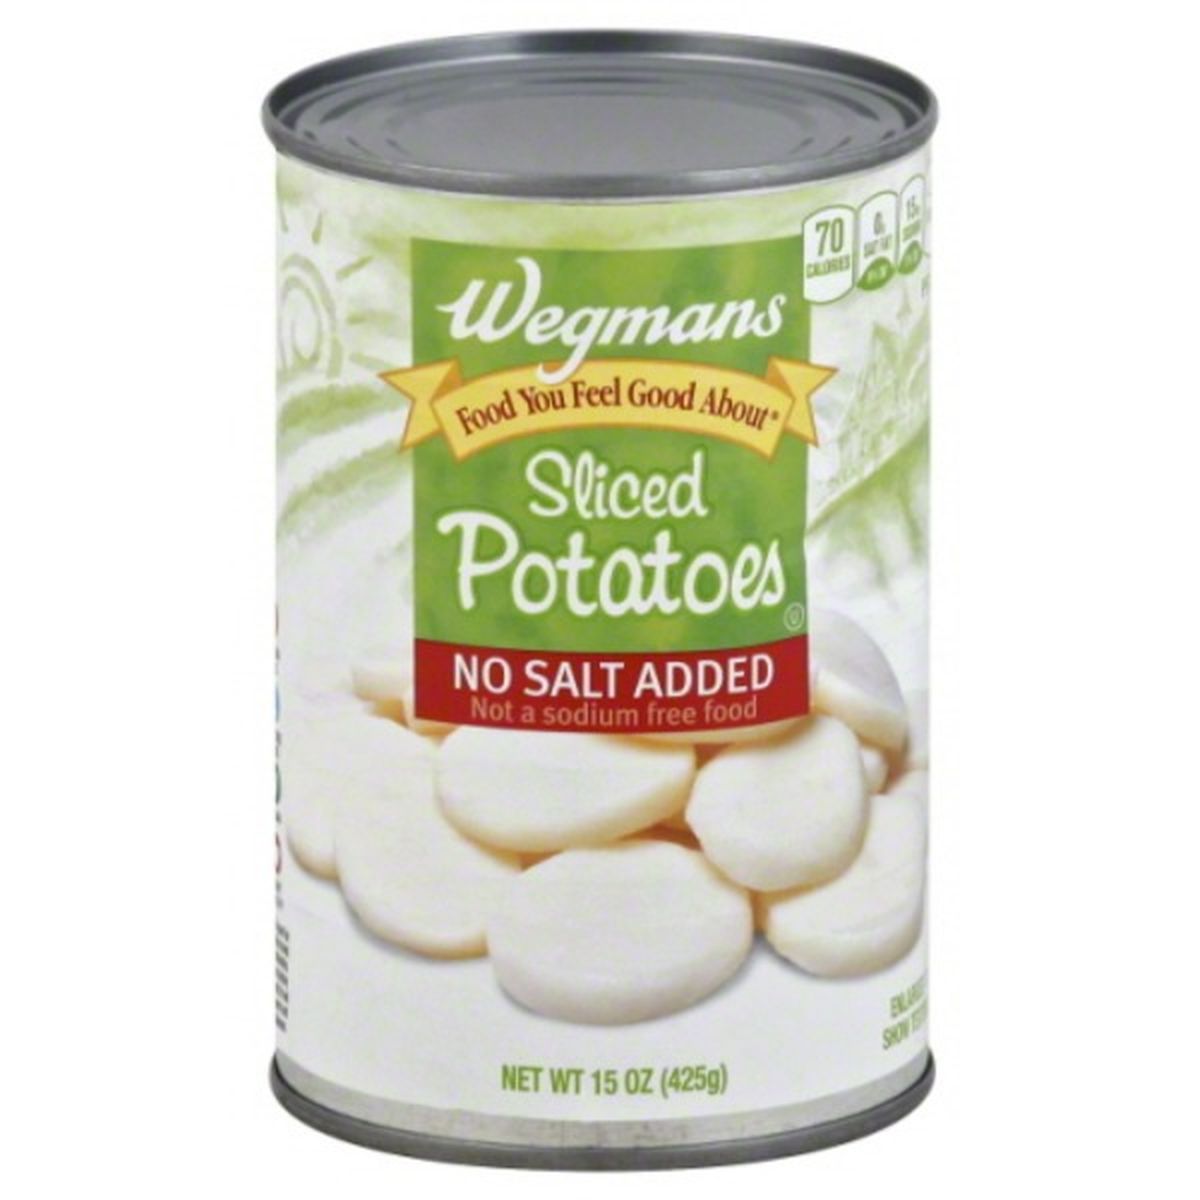 Calories in Wegmans Sliced Potatoes, No Salt Added